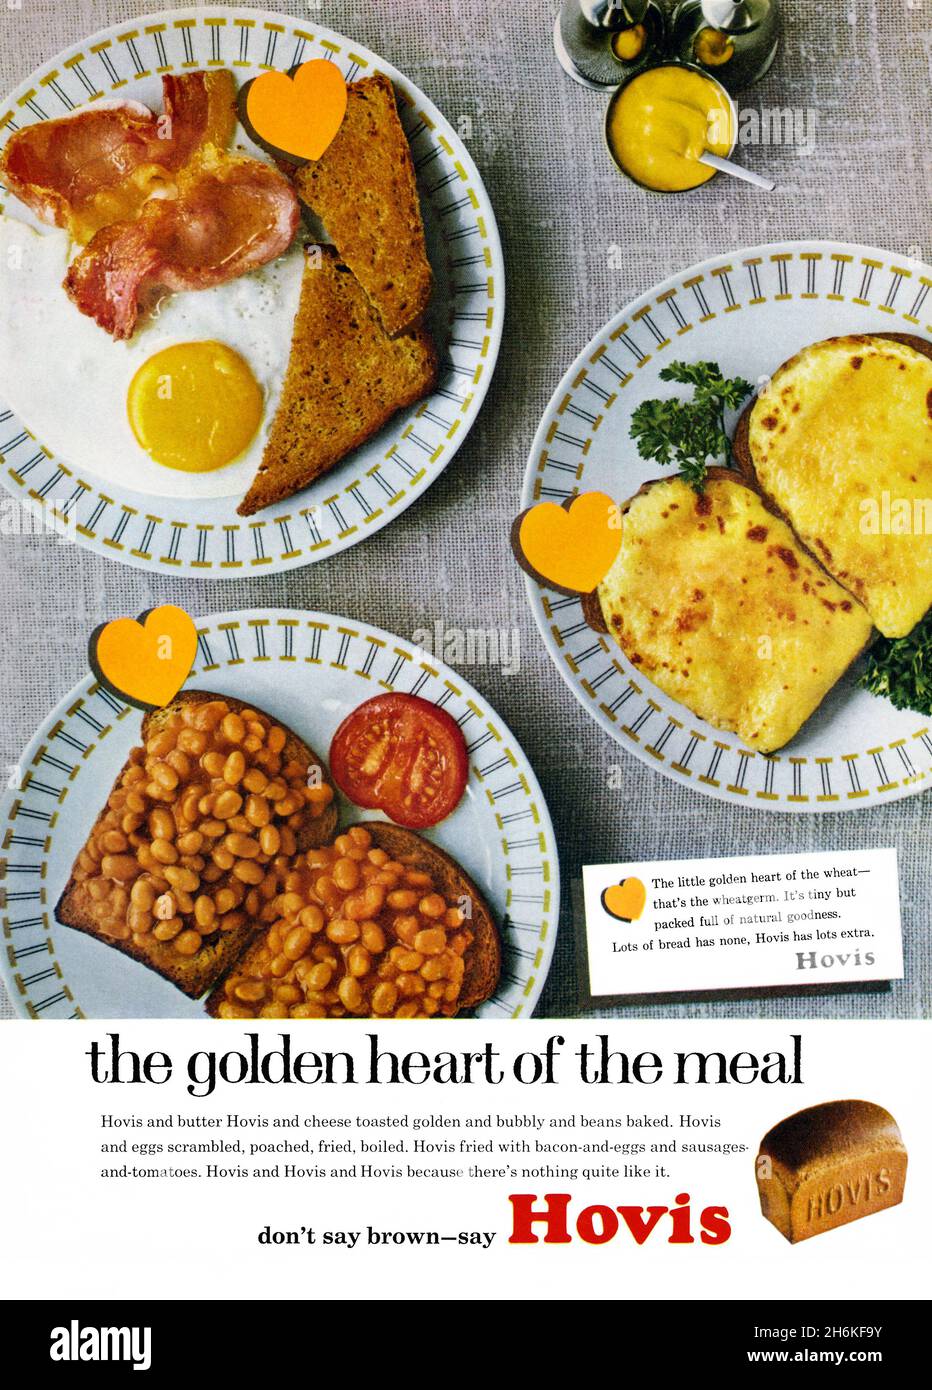 Eine Anzeige von 1960s für Hovis-Brot. Die Anzeige erschien in einer Zeitschrift, die im März 1965 in Großbritannien veröffentlicht wurde. Das Foto zeigt einige Teller mit Frühstücksgerichten – Bohnen auf Toast, ein Bratkäse und geschmolzener Käse auf Toast. Grafische goldene ‘Herzen’ weisen darauf hin, dass Hovis ‘das goldene Herz des Essens’ ist. An der Basis steht der beliebte Slogan ‘Sag nicht braun – Sag Hovis’. Hovis Ltd ist ein britisches Unternehmen, das Mehl und Brot herstellt. Die Marke stammt aus Stoke-on-Trent und wurde 1886 erstmals in Macclesfield, Heshire, in Serie produziert – Vintage-1960s-Grafiken für die redaktionelle Verwendung. Stockfoto